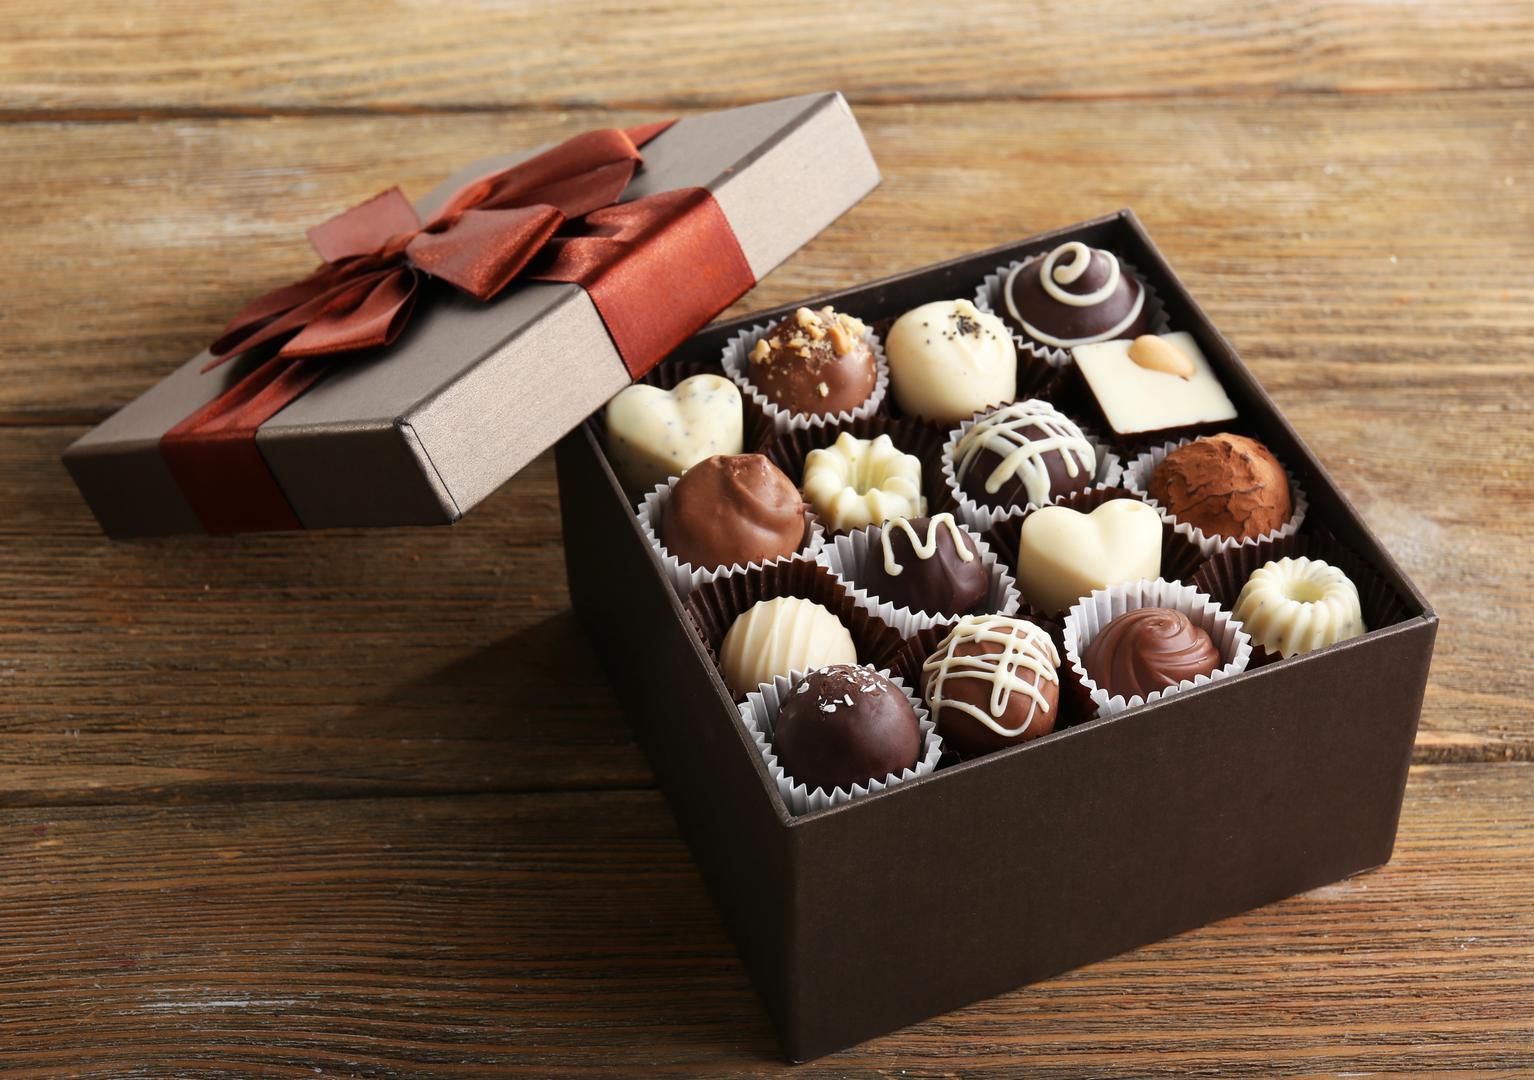 10. Prvu čokoladnu bombonijeru za Valentinovo osmislio je Richard Cadbury u 1800-ima.
